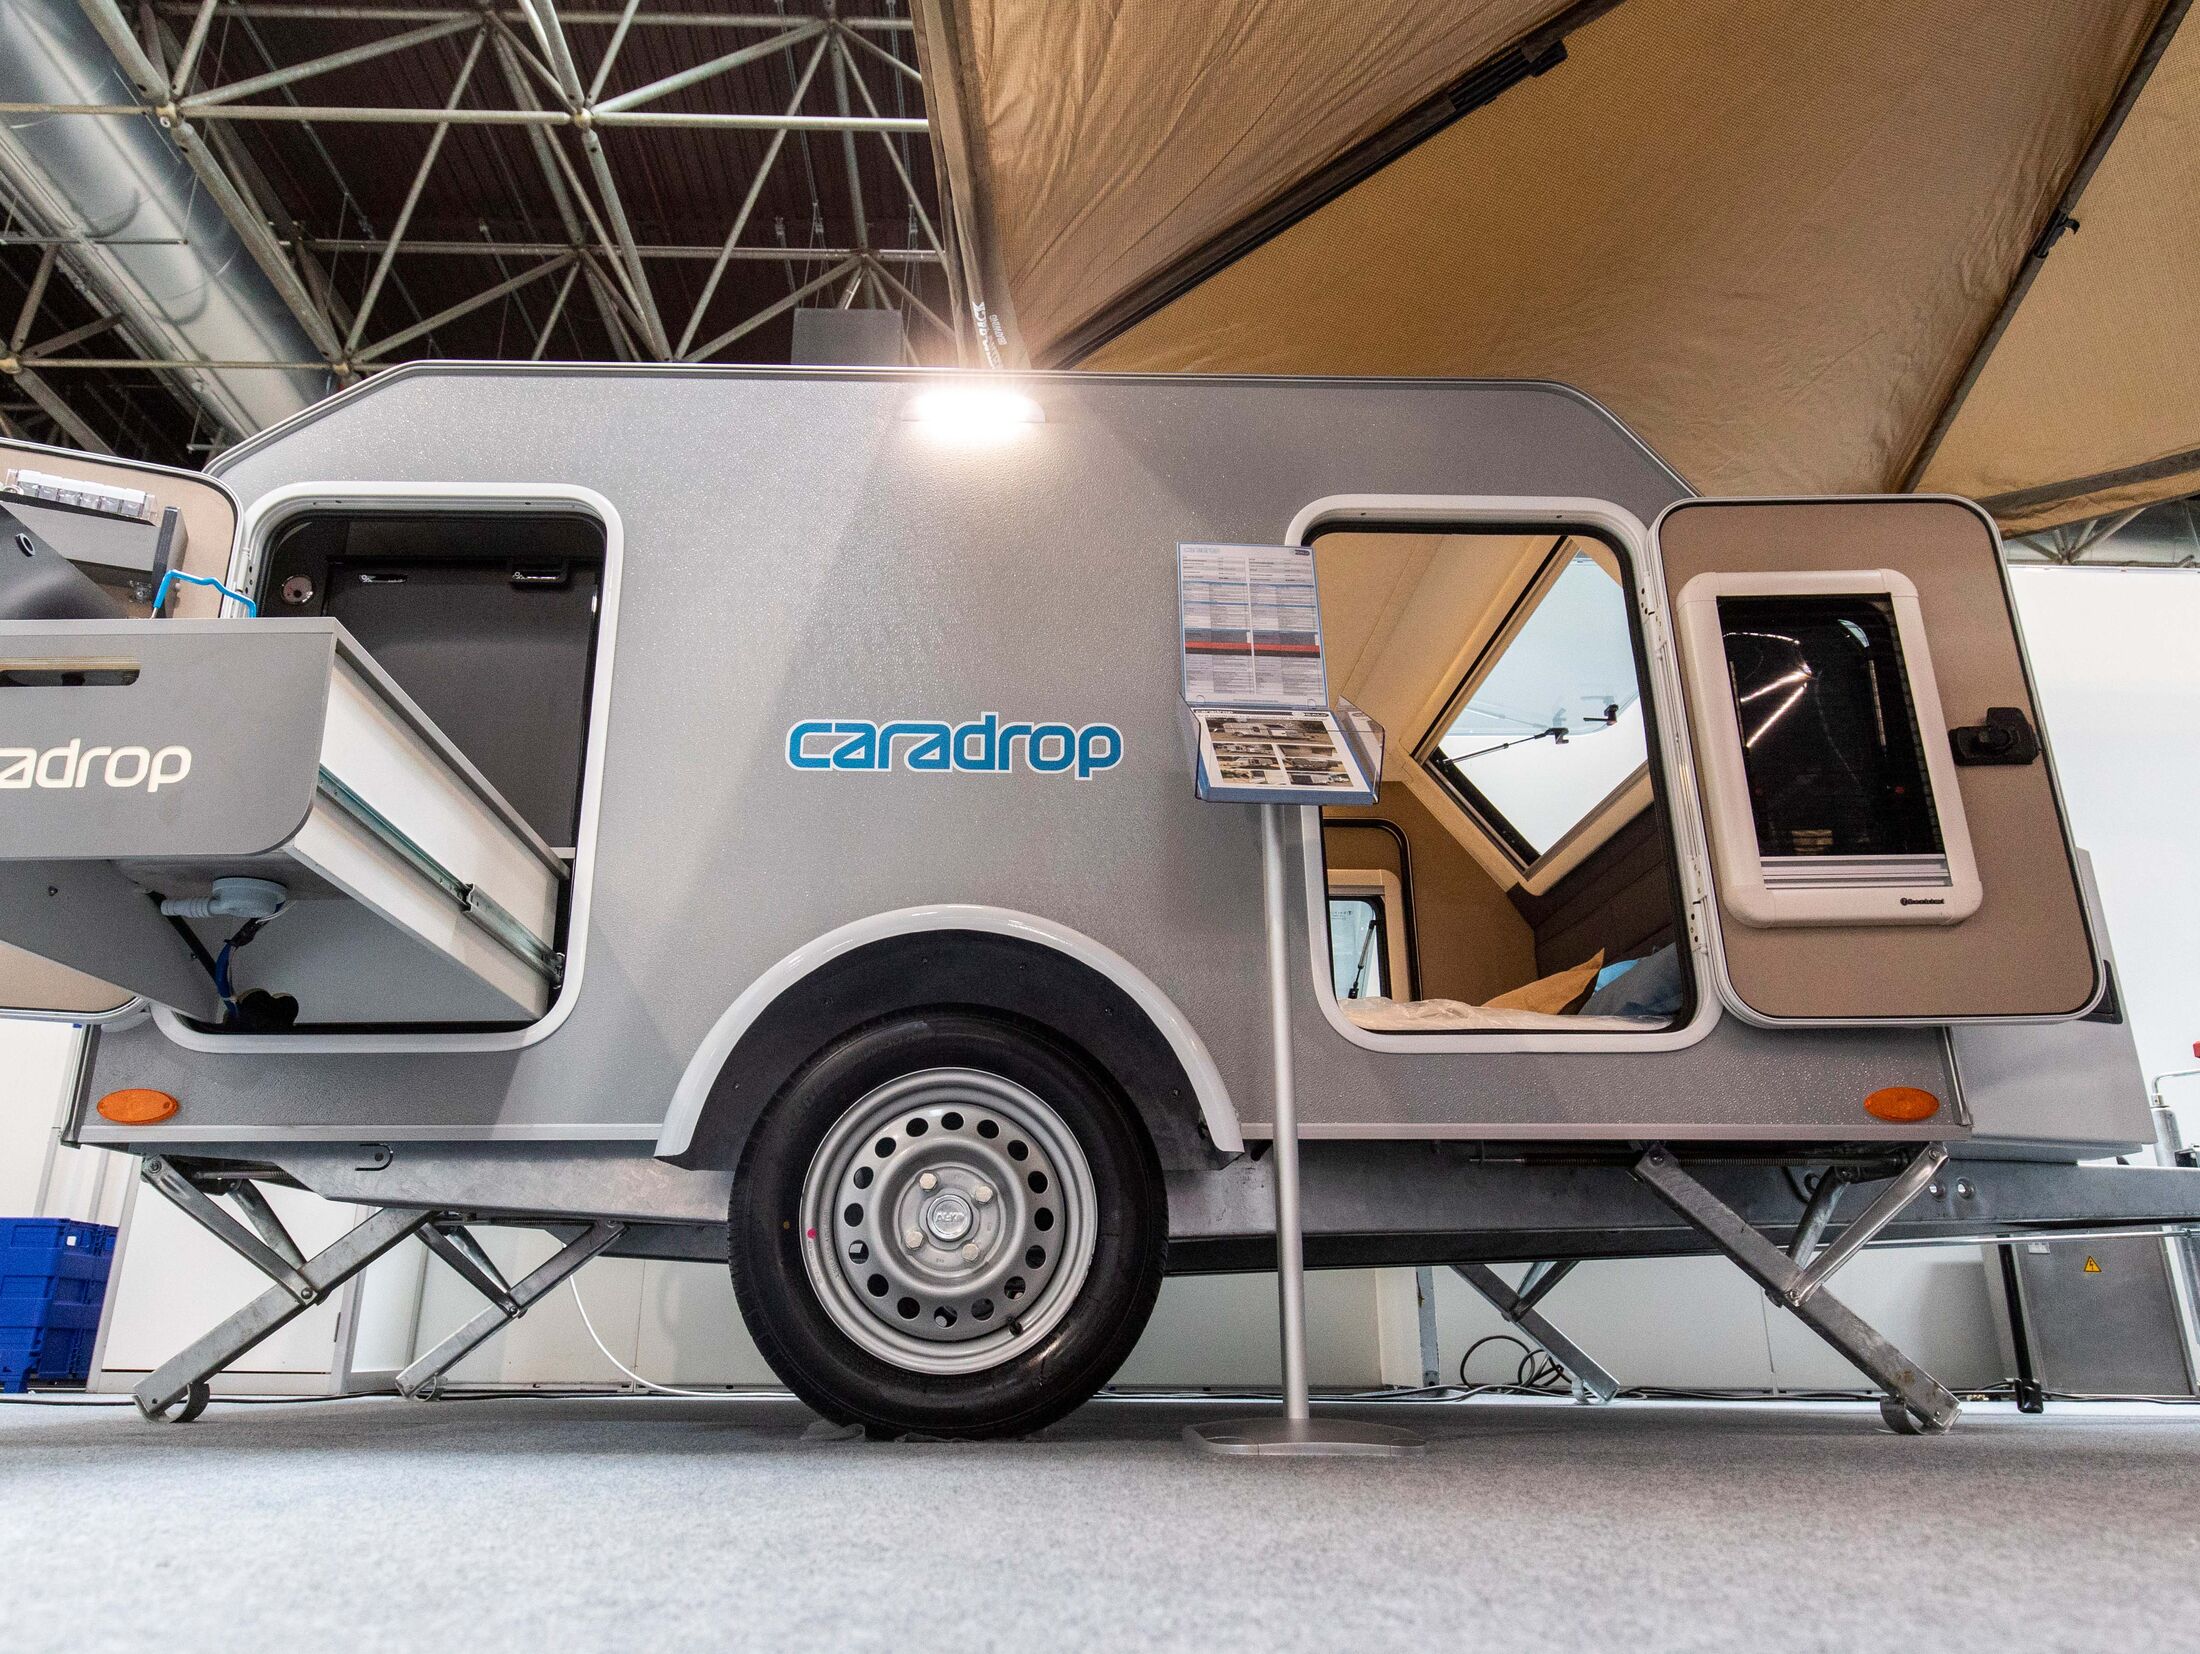 Zubehör-Neuheiten auf dem Caravan Salon 2023 - Camping, Cars & Caravans